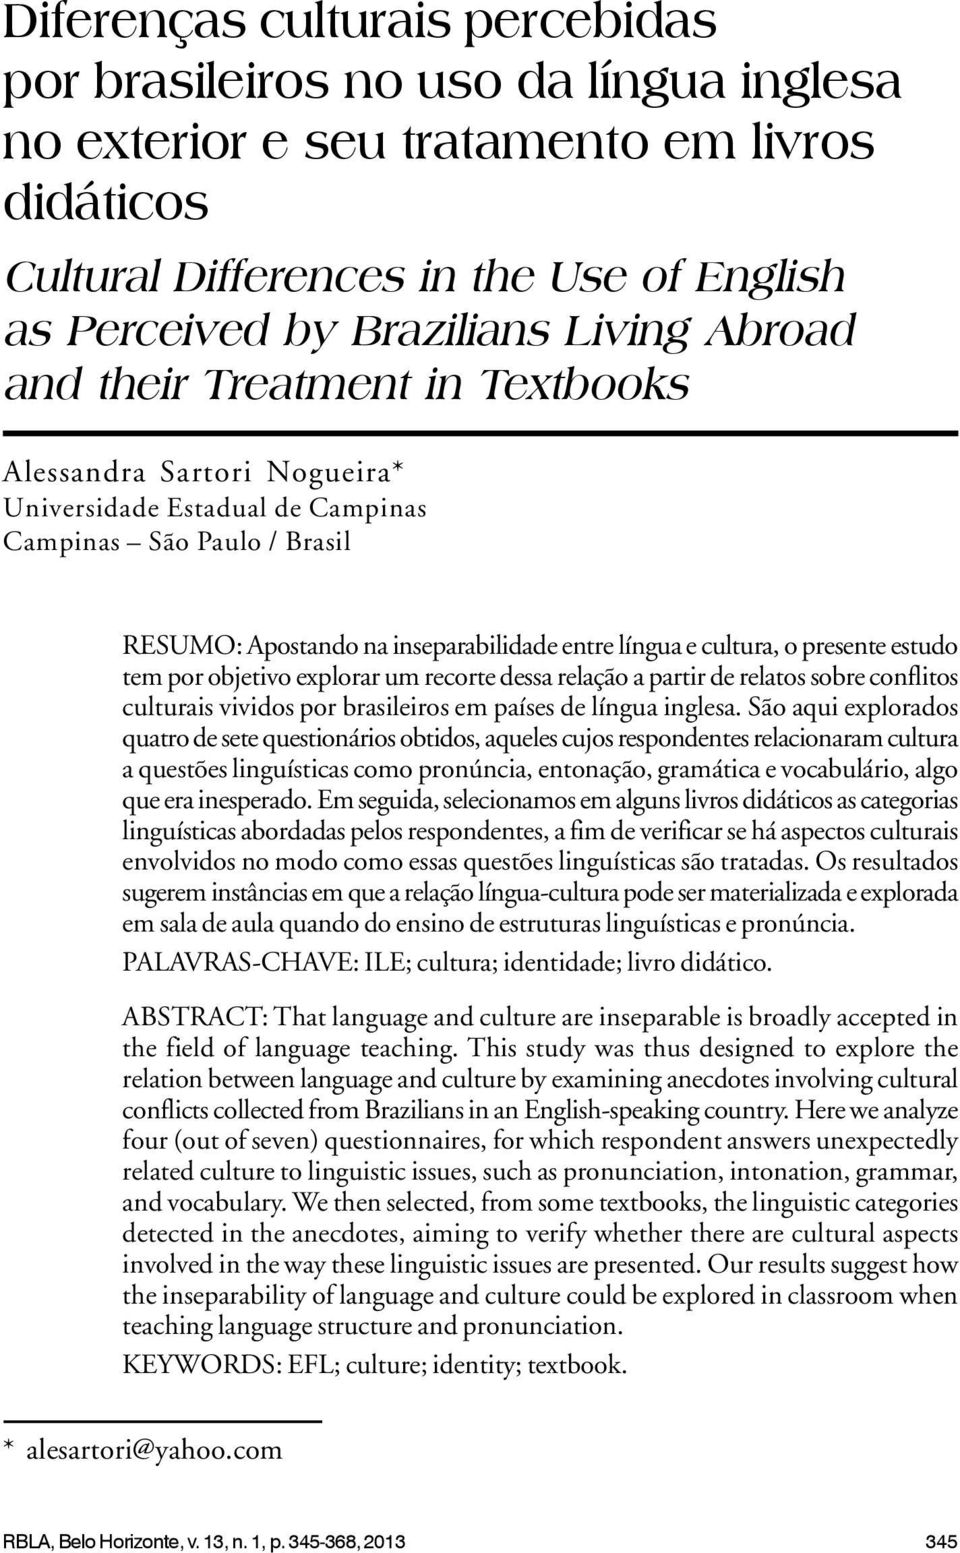 presente estudo tem por objetivo explorar um recorte dessa relação a partir de relatos sobre conflitos culturais vividos por brasileiros em países de língua inglesa.